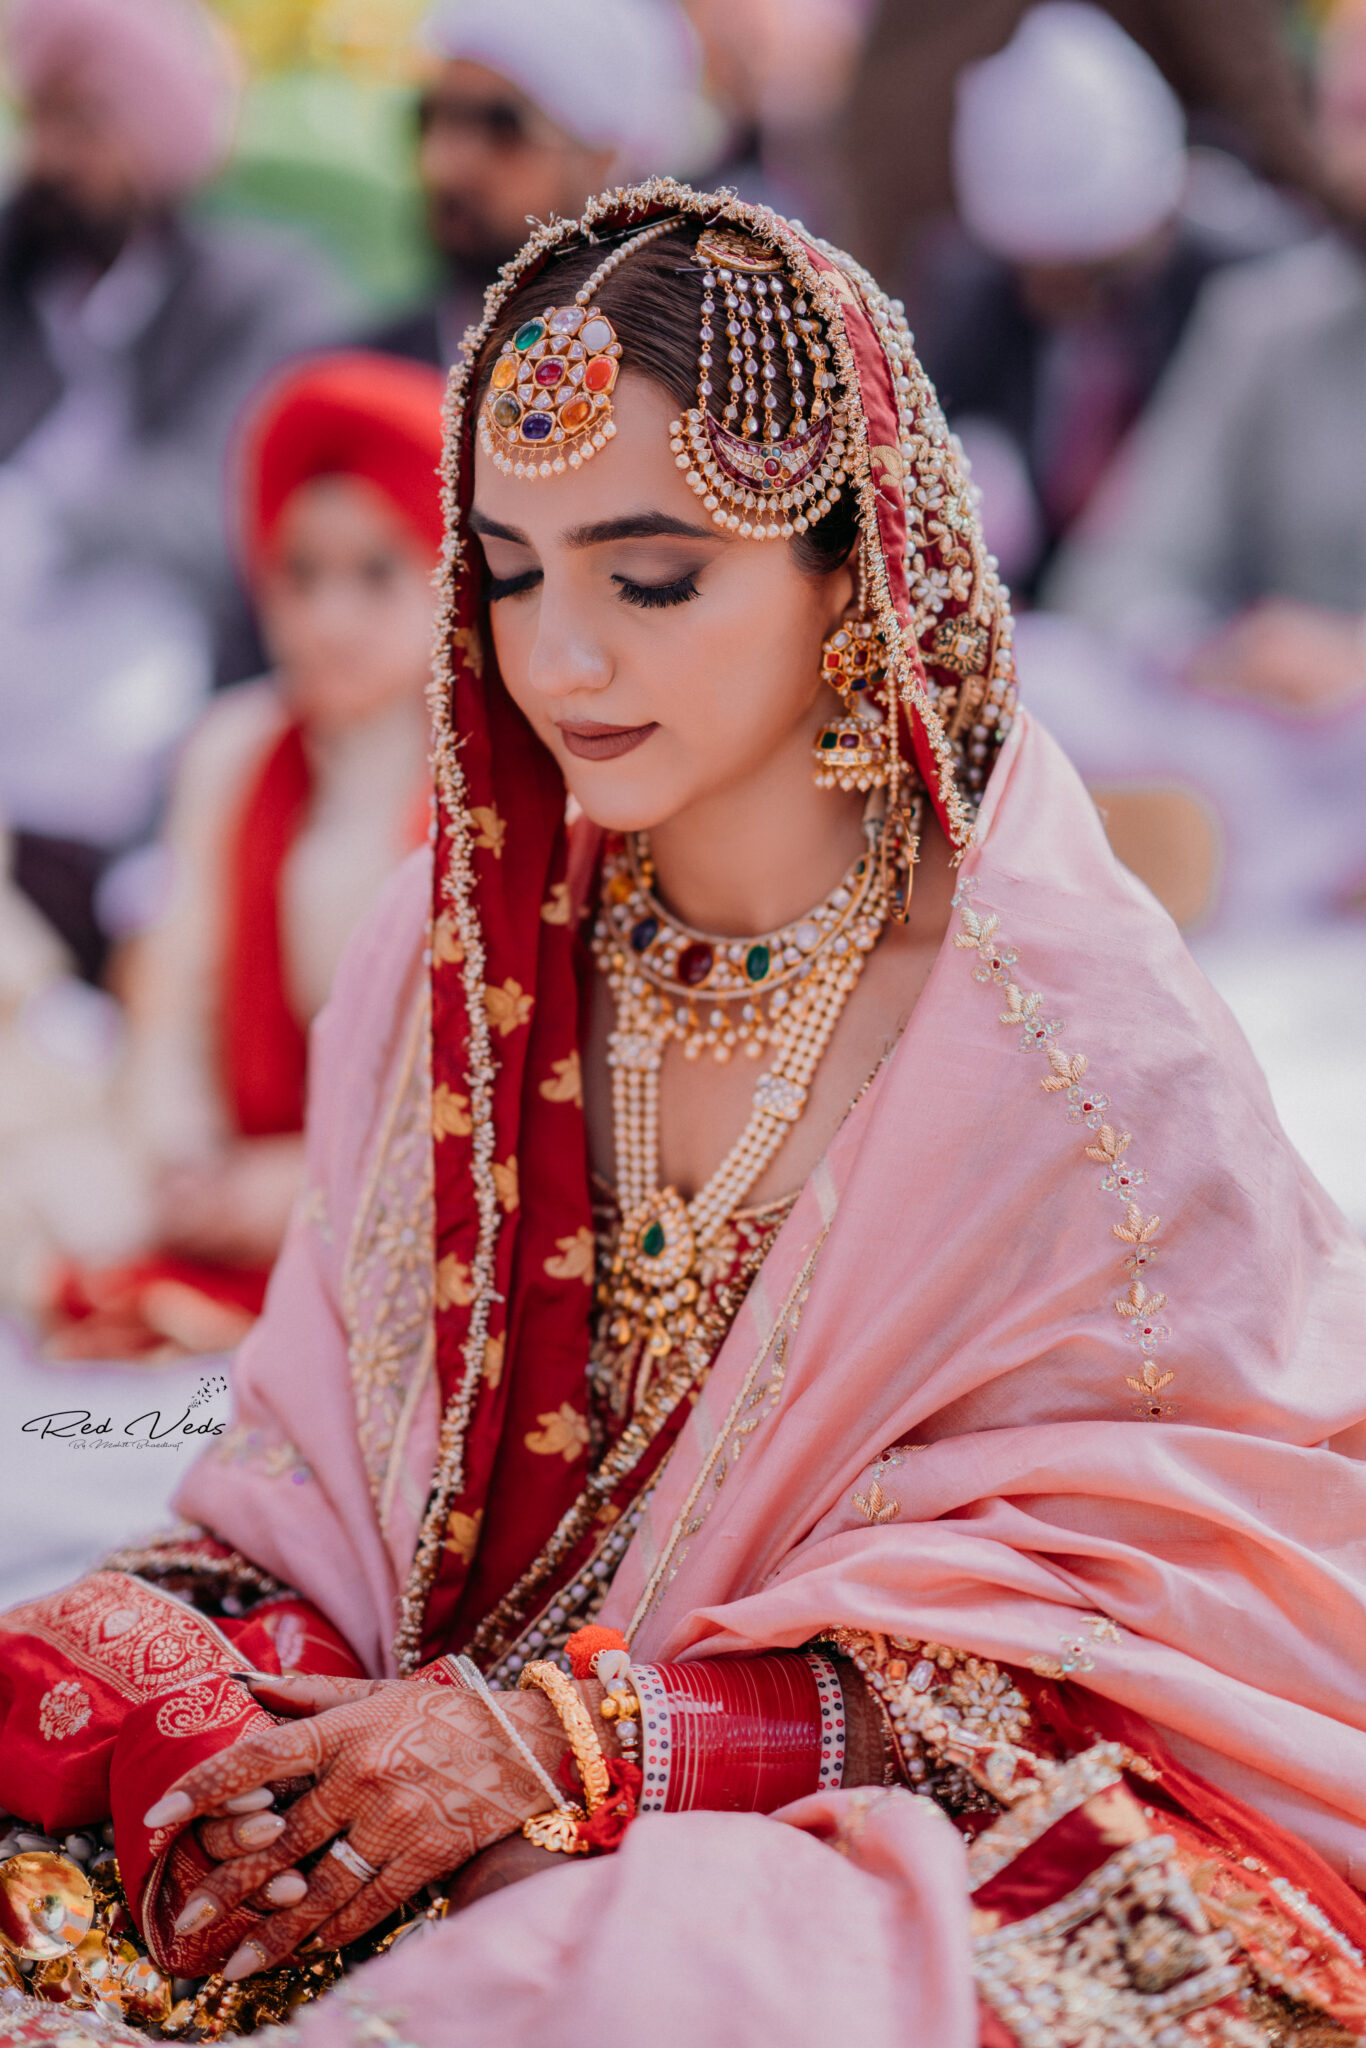 Best Wedding Photographer in Chandigarh | Destination Wedding Photographer | Red Veds